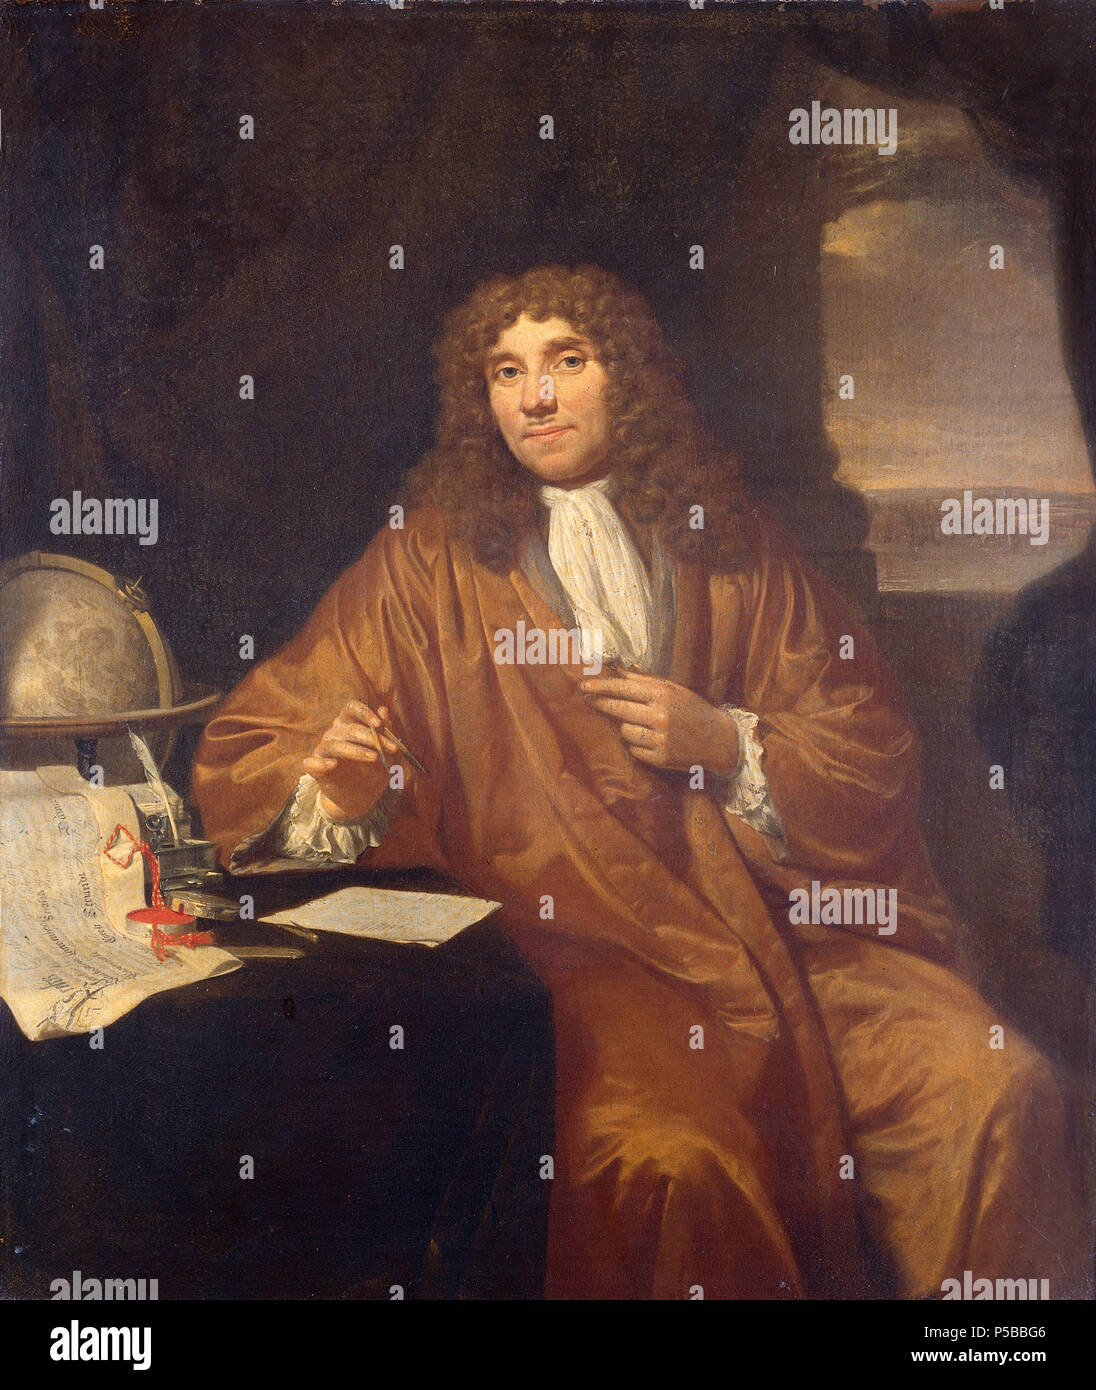 Anthonie van Leeuwenhoek (1632-1723). Natuurkundige te Delft .  Nederlands: Portret van Anthonie van Leeuwenhoek (1632-1723), natuurkundige te Delft. Kniestuk, zittend aan een schrijftafel waarop een oorkonde ligt van zijn benoeming tot lid van de Royal Society of Physicians te Londen door Karel II. Verder ook een globe en een inktstel; hij houdt een passer in de hand. . between 1670 and 1693. N/A 109 Anthonie van Leeuwenhoek (1632-1723). Natuurkundige te Delft Rijksmuseum SK-A-957 Stock Photo